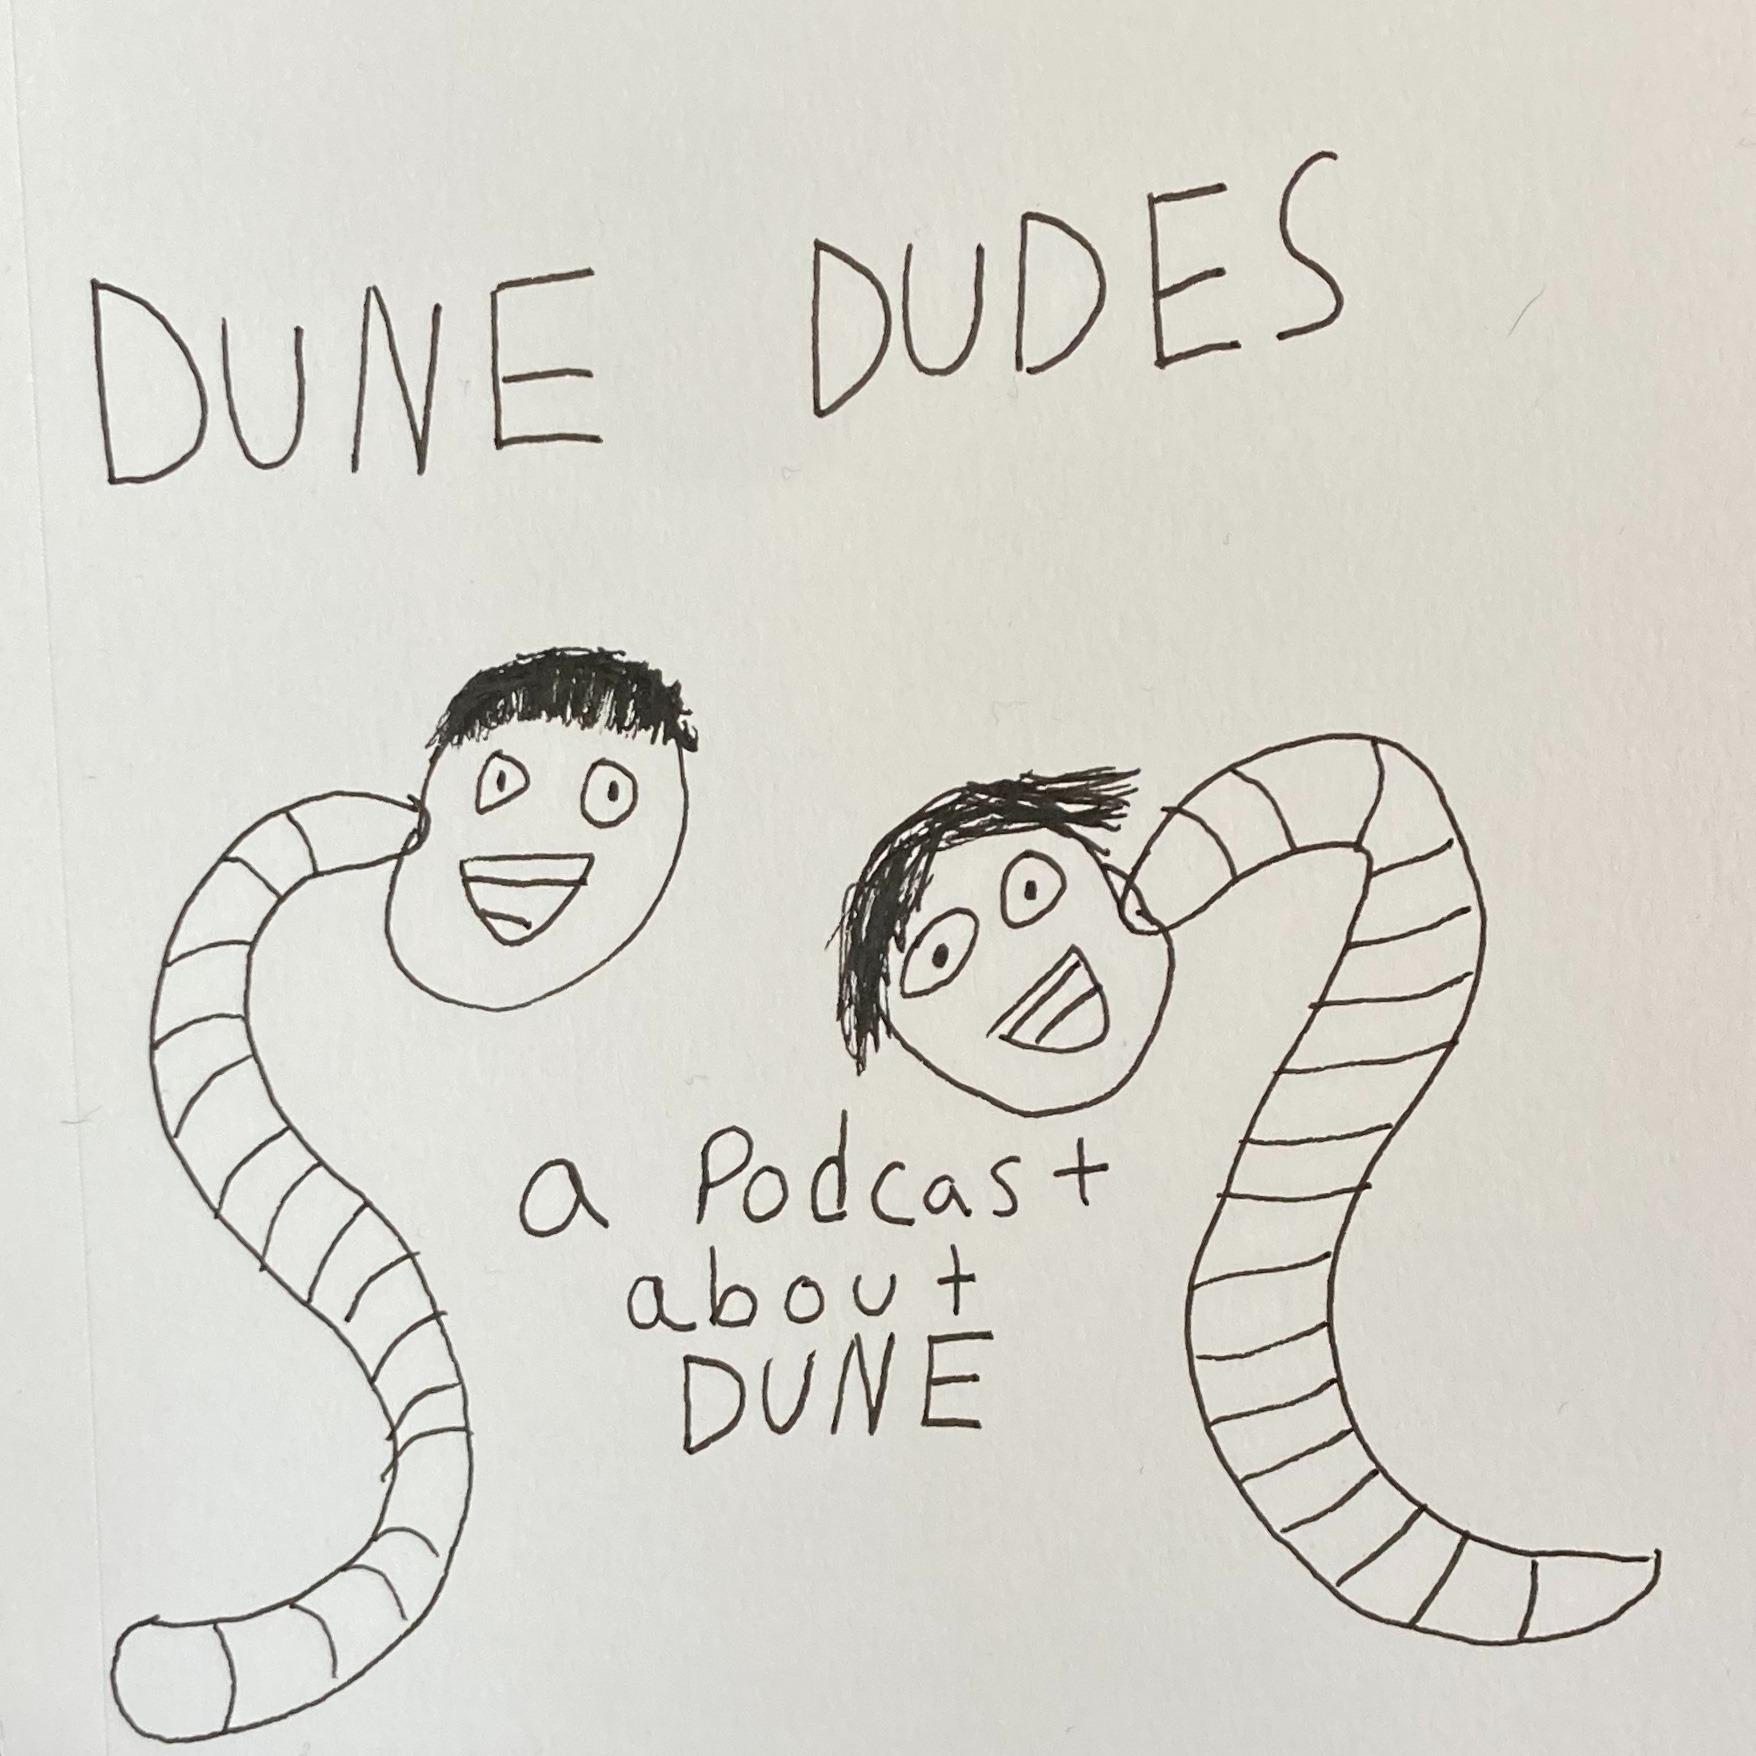 Dune Dudes